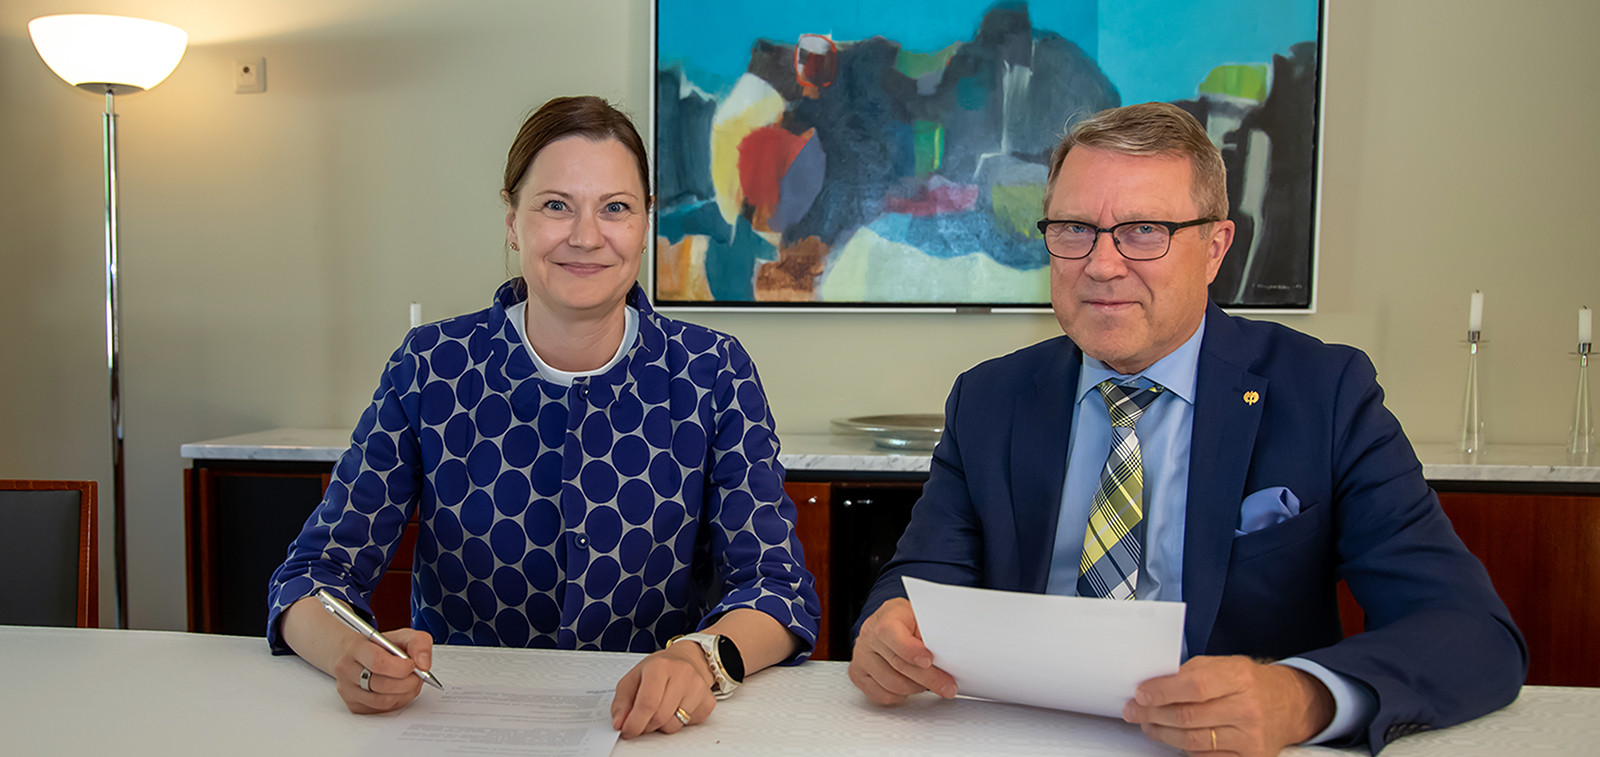 Minna Arve ja Jukka Kola solmivat strategisen kumppanuussopimuksen